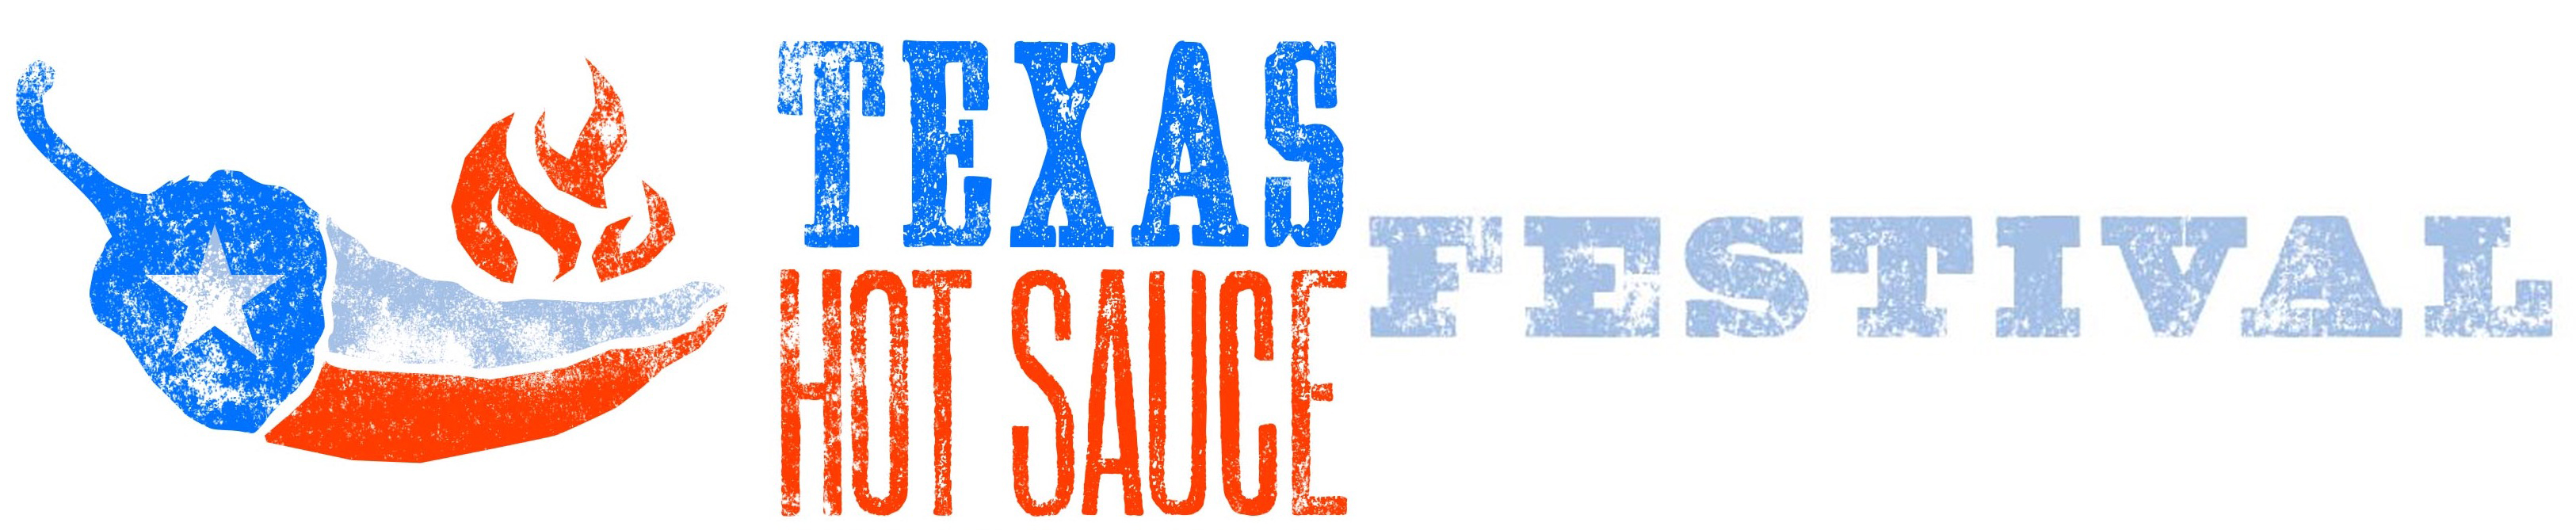 2018 Houston Hot Sauce Festival